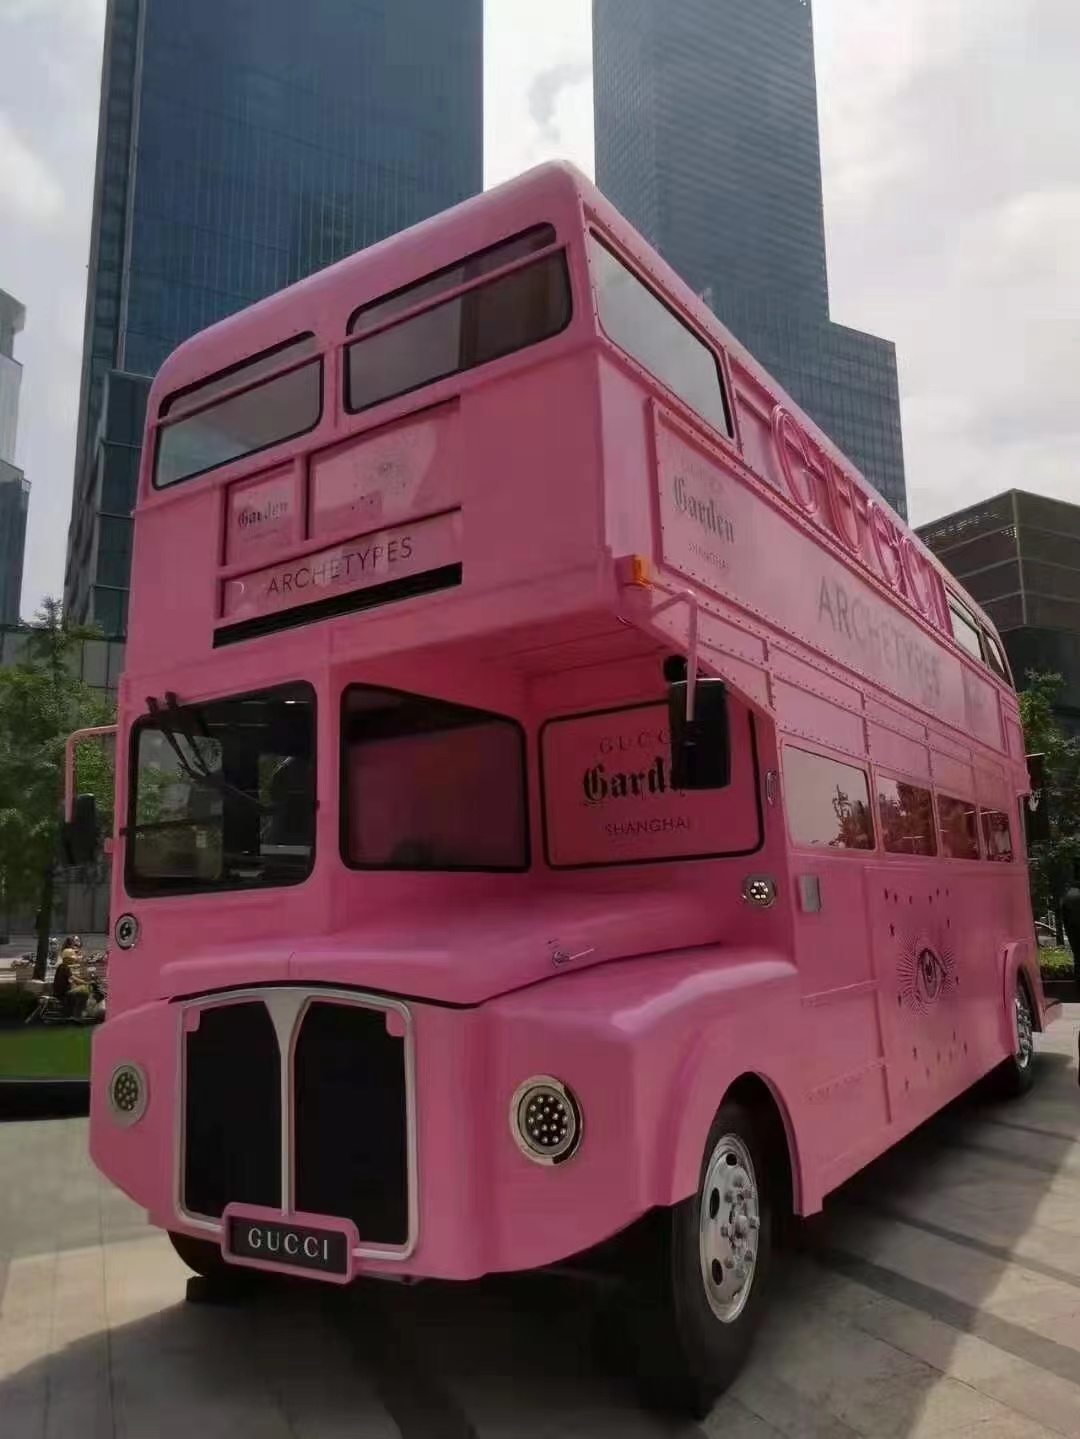 大型双层巴士模型观光车步行街景区商场餐车美陈装饰布置道具